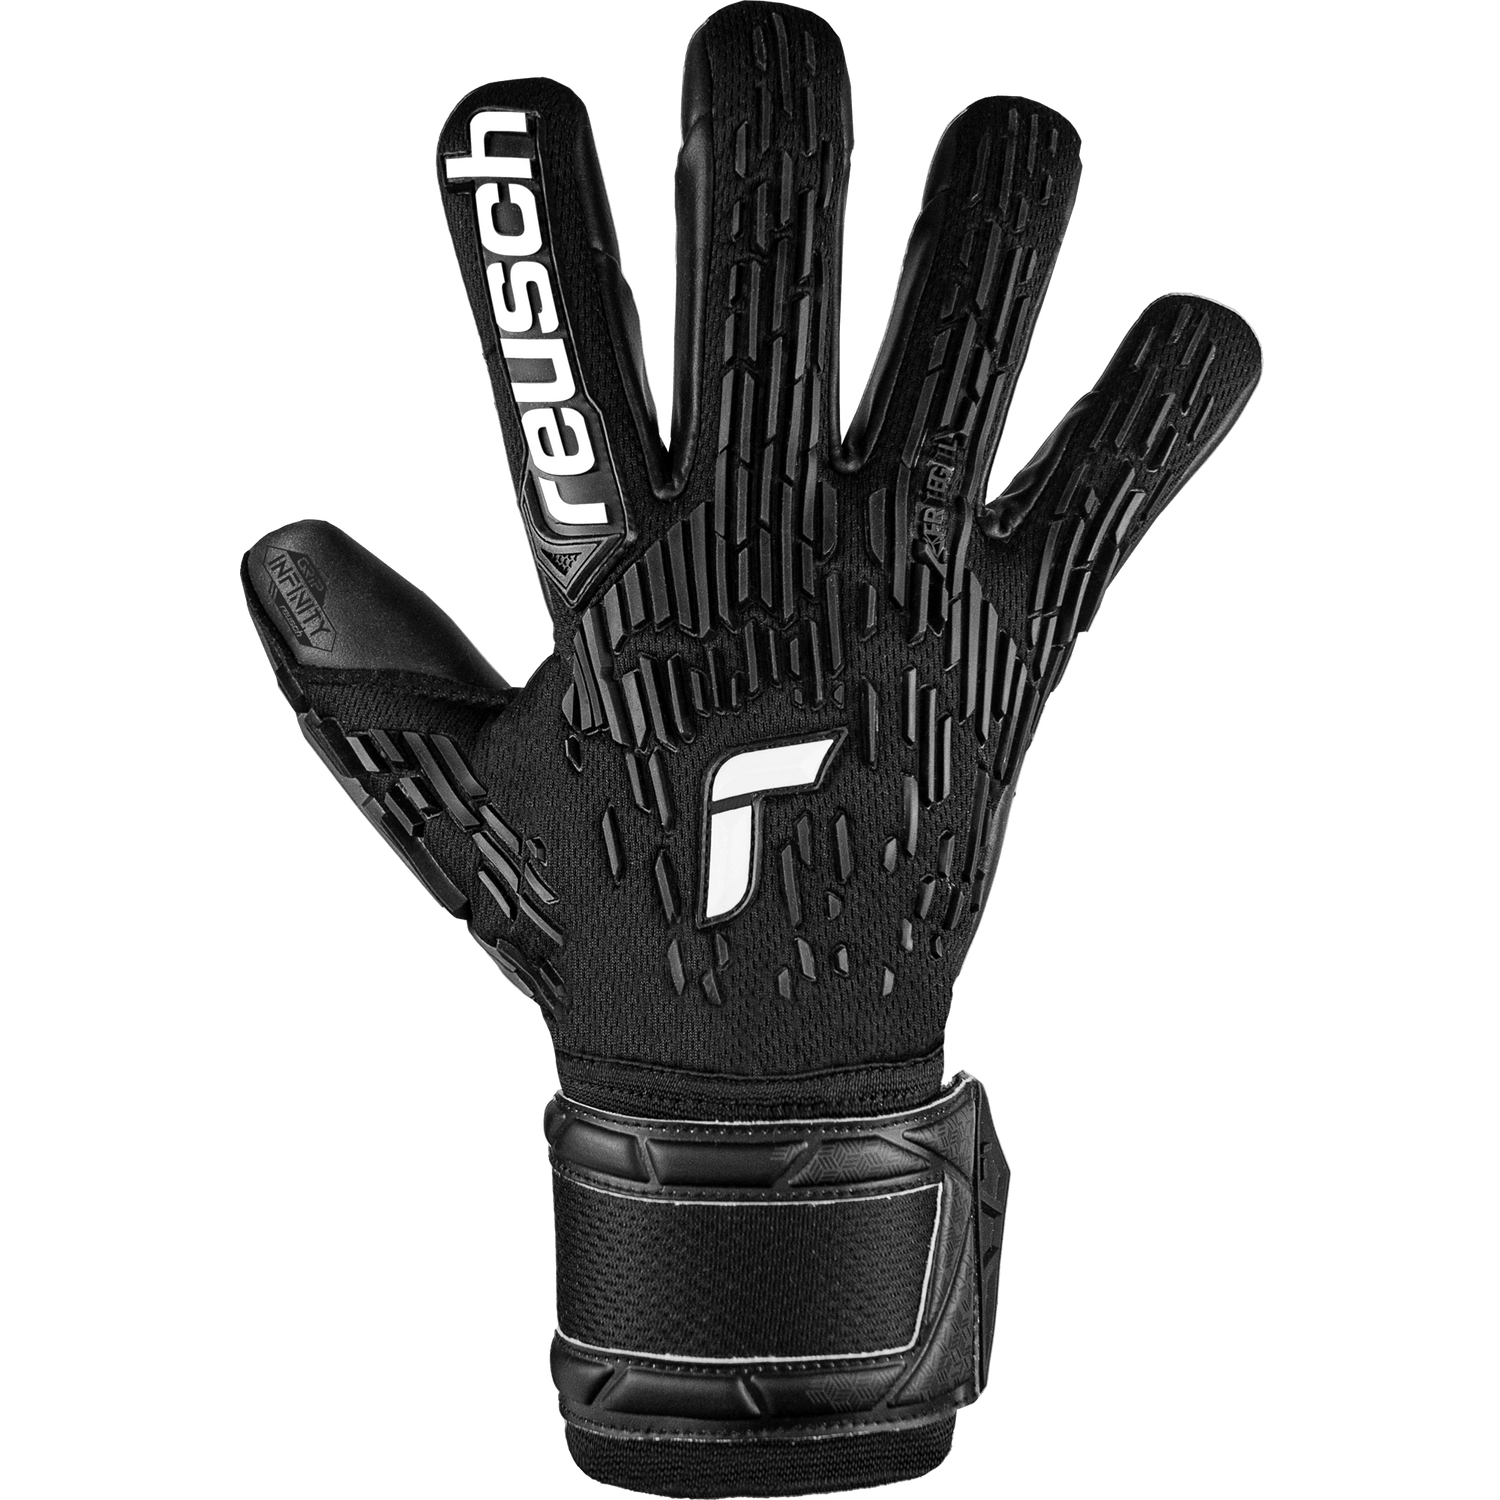 Reusch Attrakt Freegel Infinity FS Goalkeeper Gloves (Single - Outer)